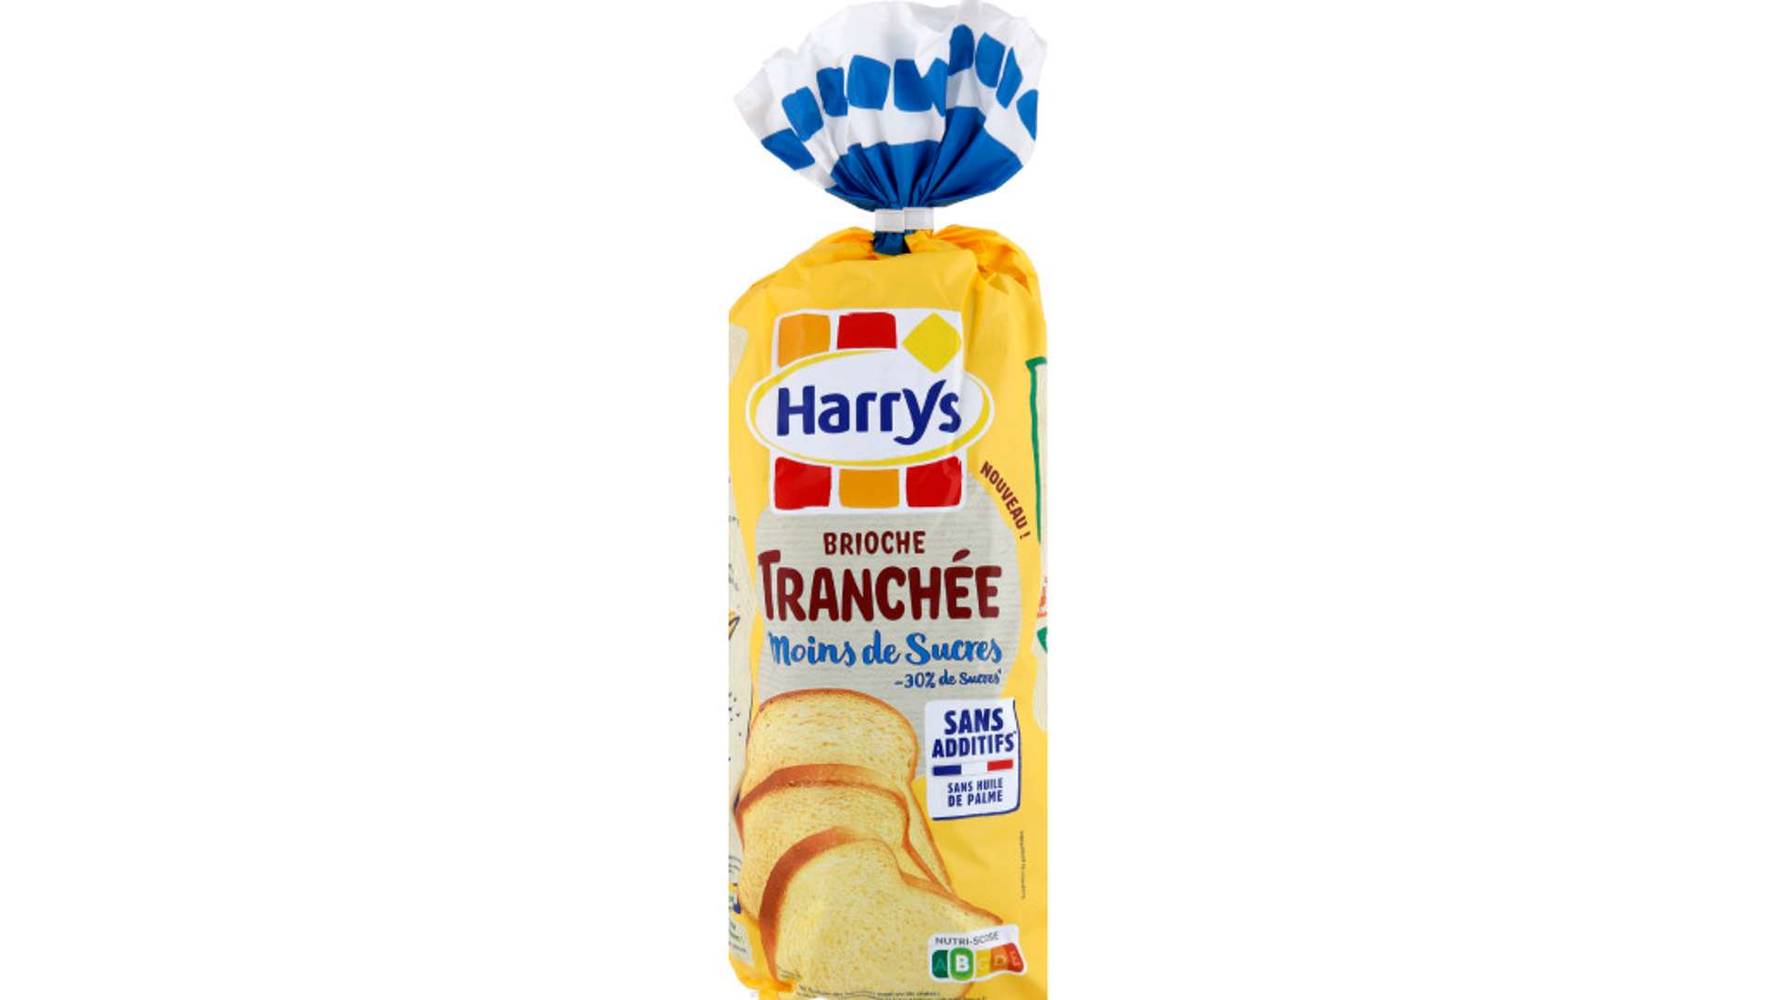 Harry's - Brioche tranchée -30% de sucre sans additif